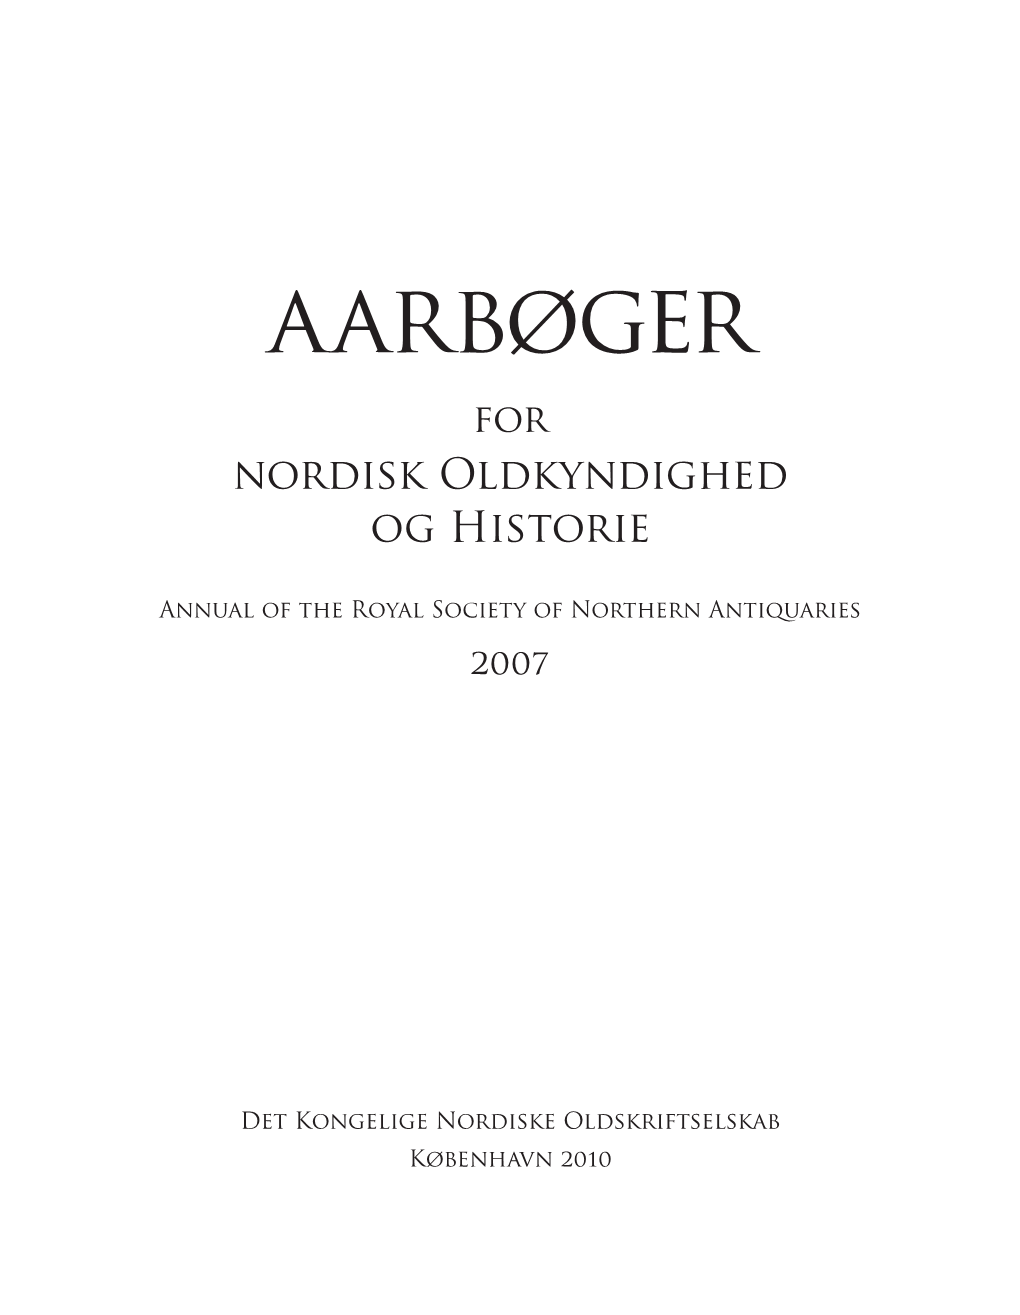 Aarbøger for Nordisk Oldkyndighed Og Historie